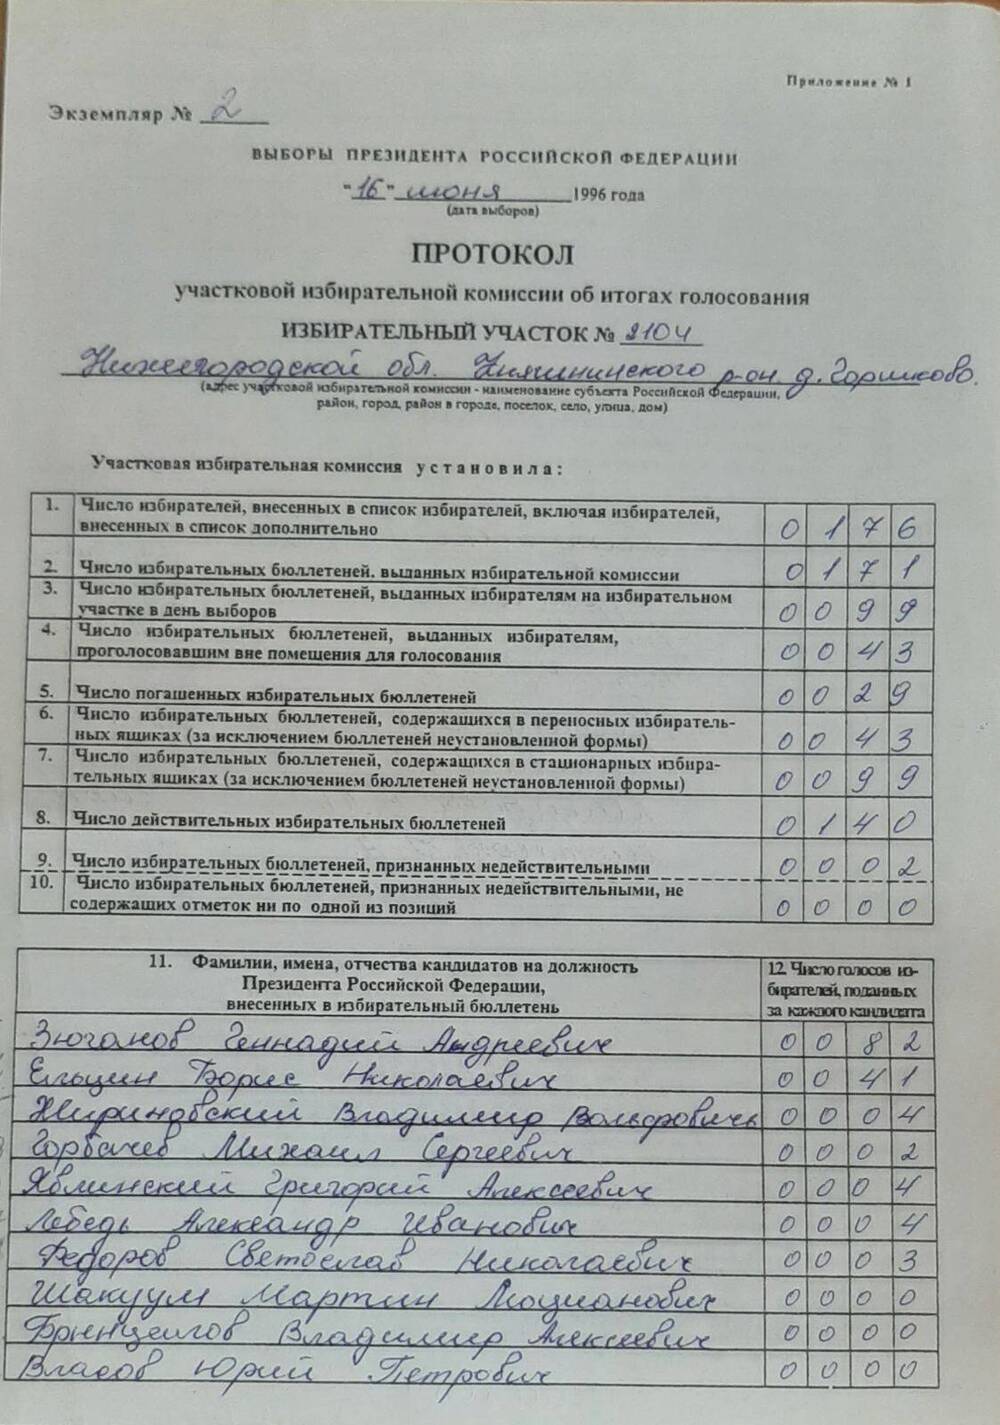 Протокол участковой избирательной комиссии по итогам голосования на выборах президента РФ от 16.06.1996 года